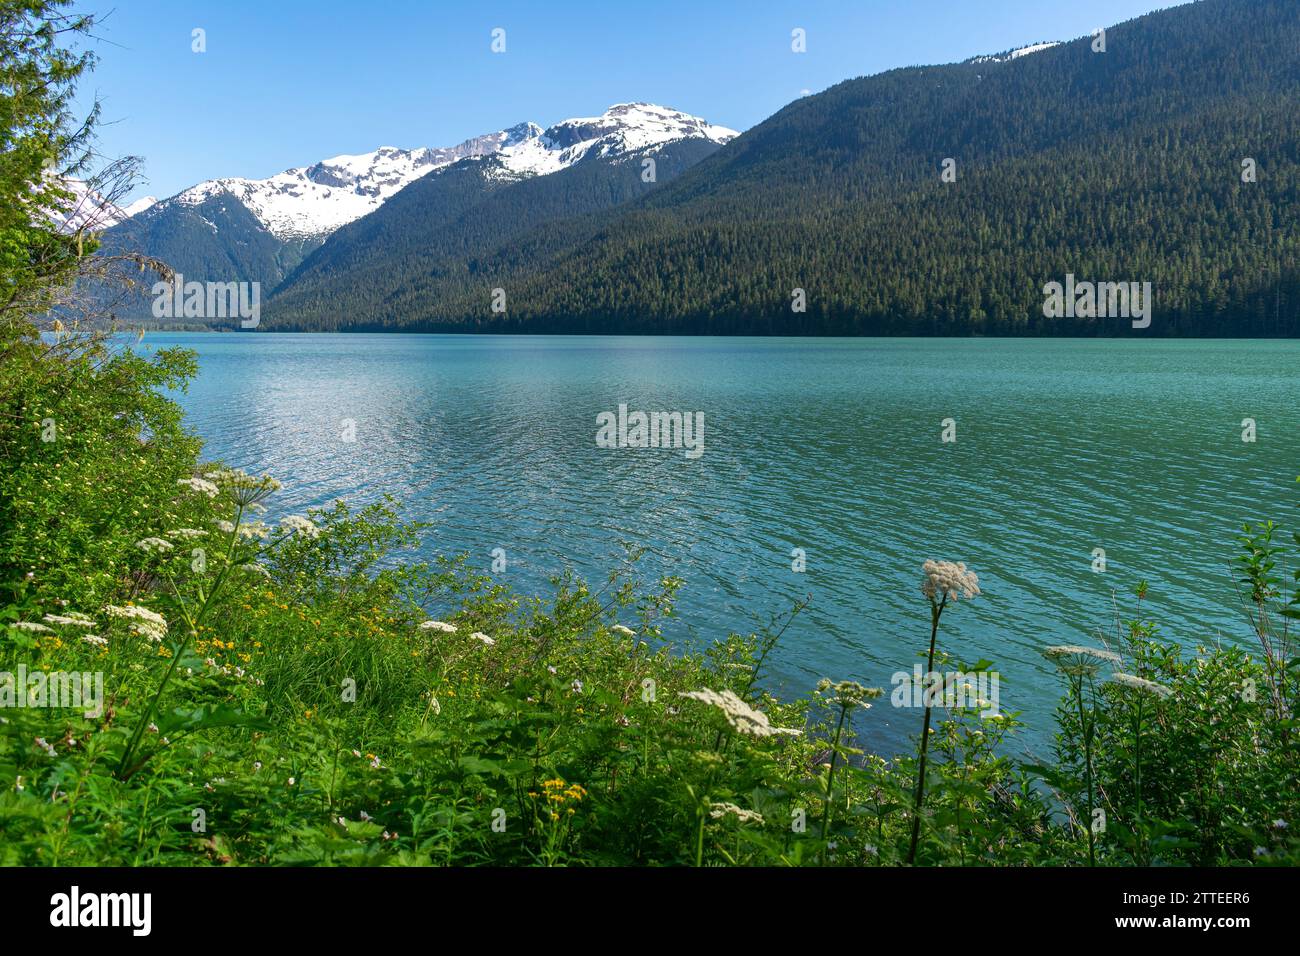 Le lac Cheakamus brille au printemps, bordé par des fleurs sauvages en fleurs et le magnifique décor des montagnes de la Colombie-Britannique. Banque D'Images